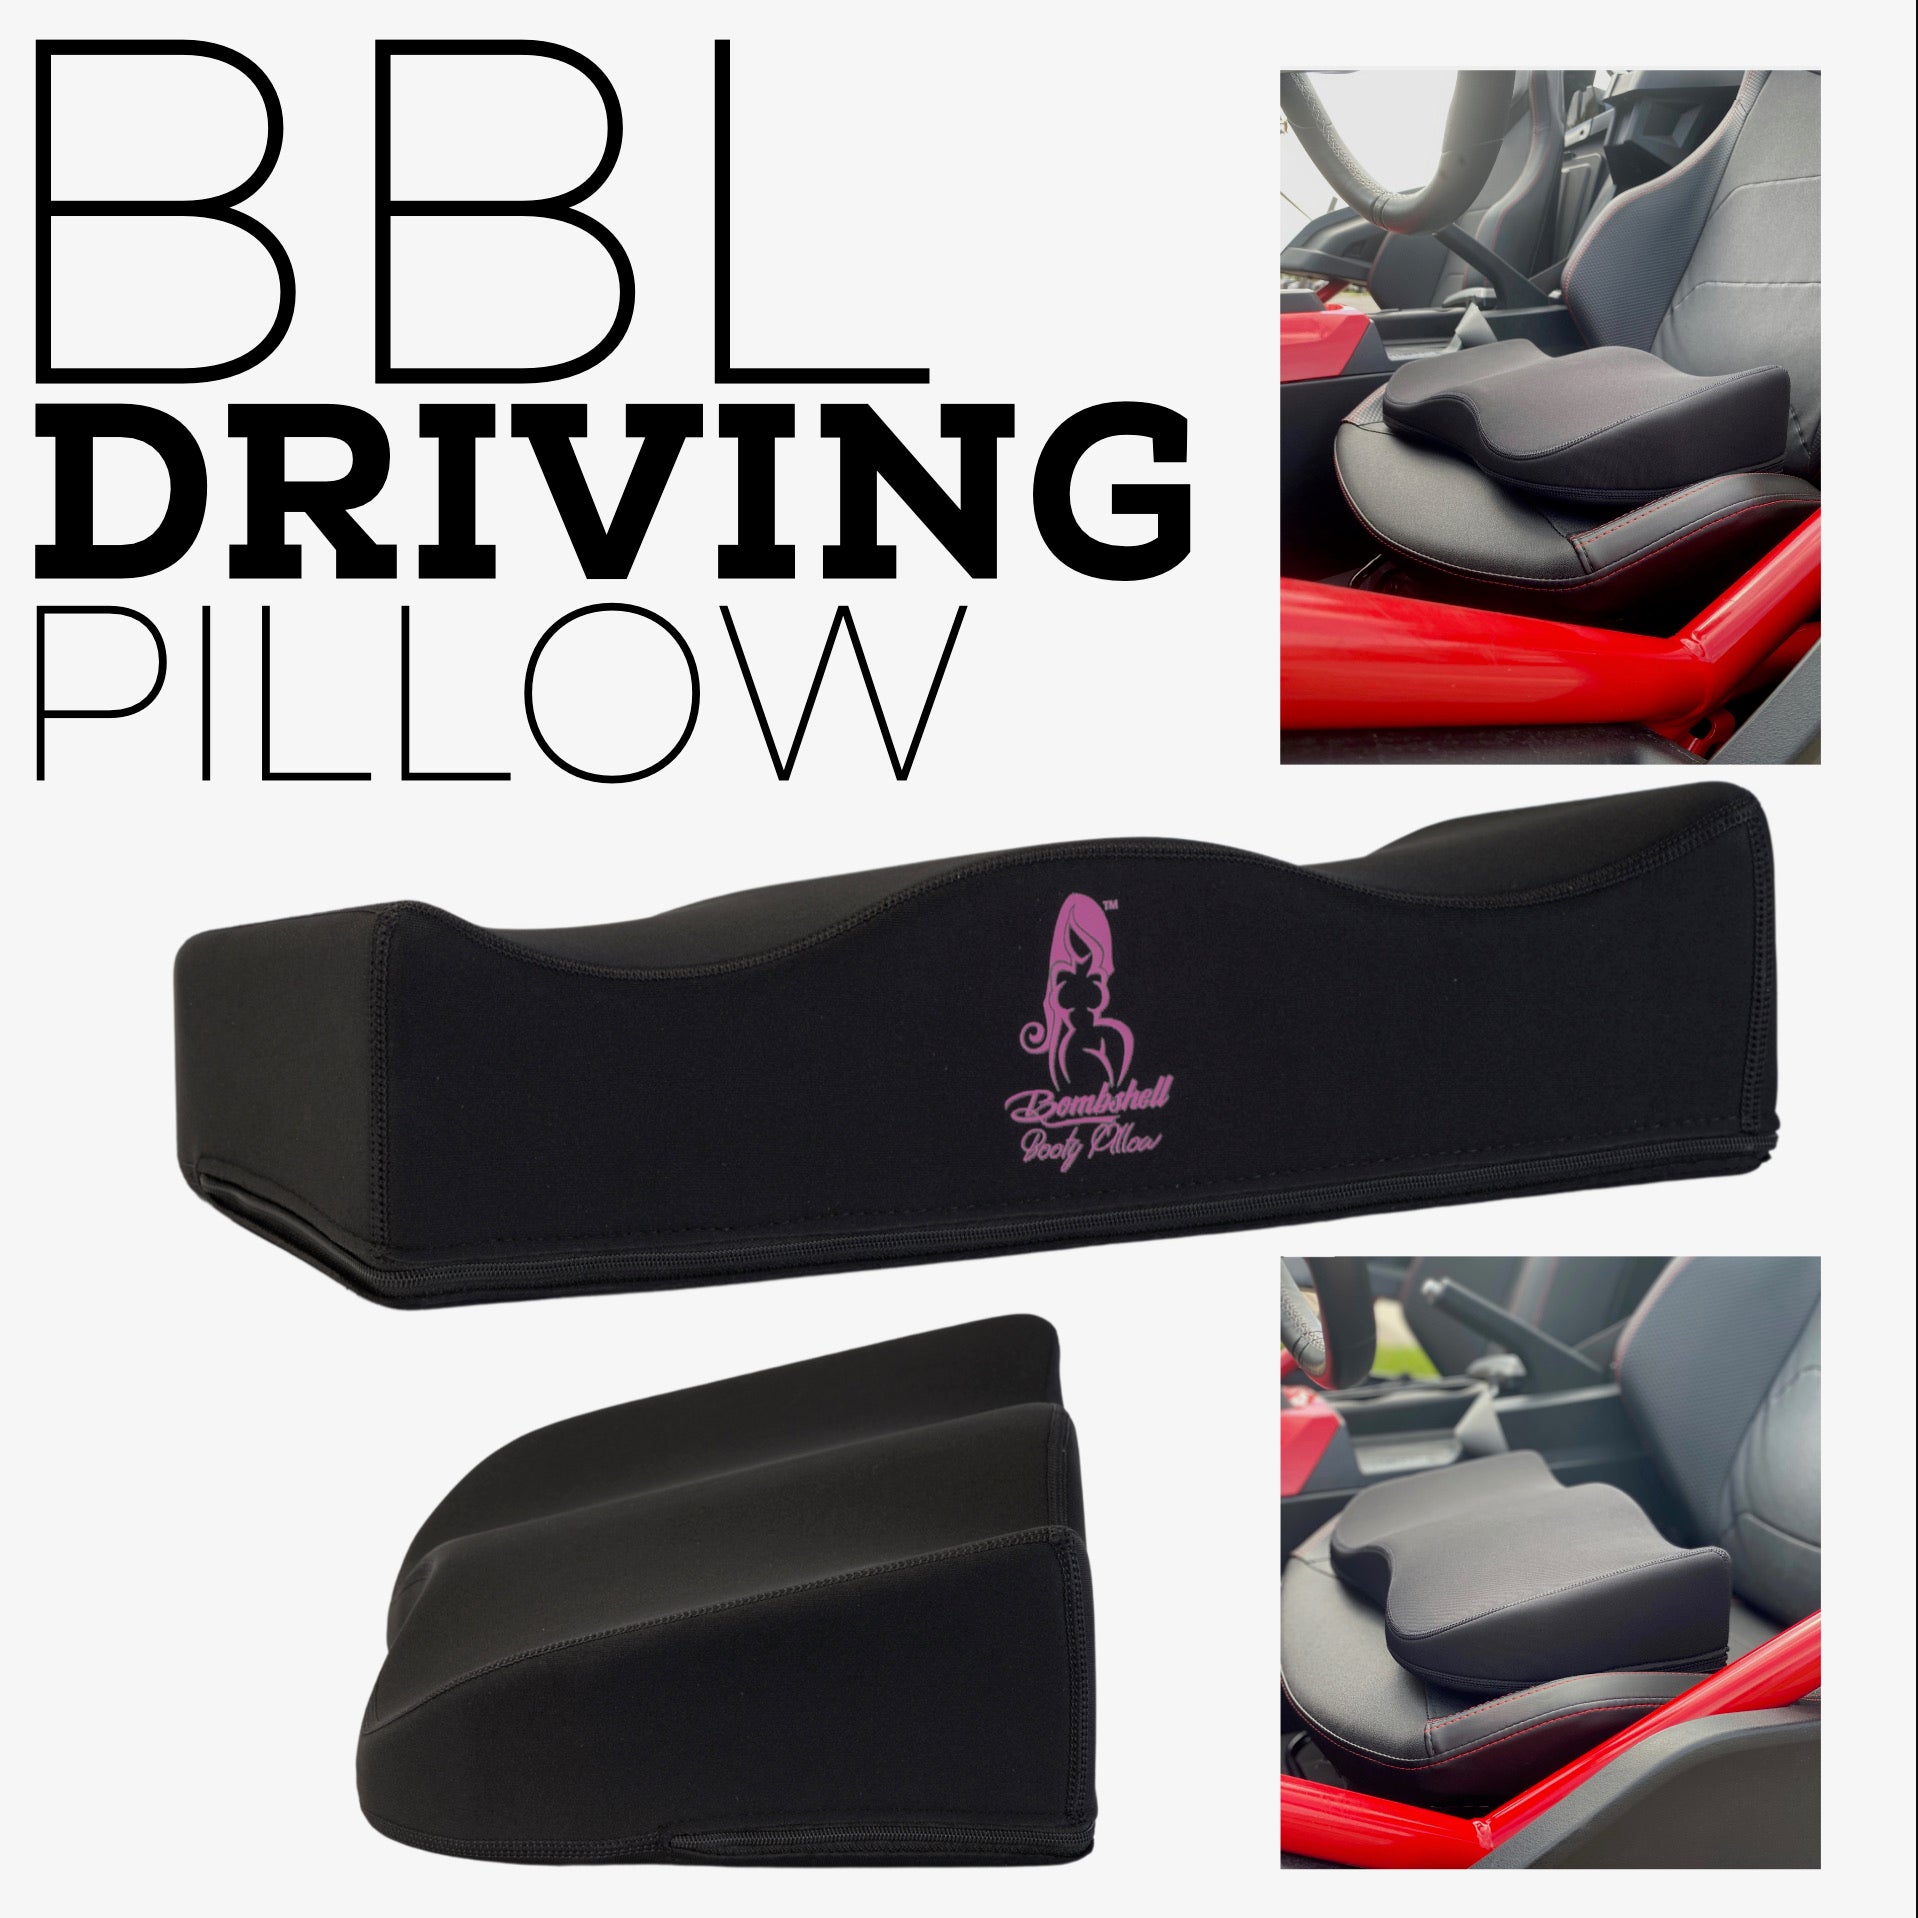 Ultimate Driving Pillow Bombshell Booty Pillow - Butt Lift